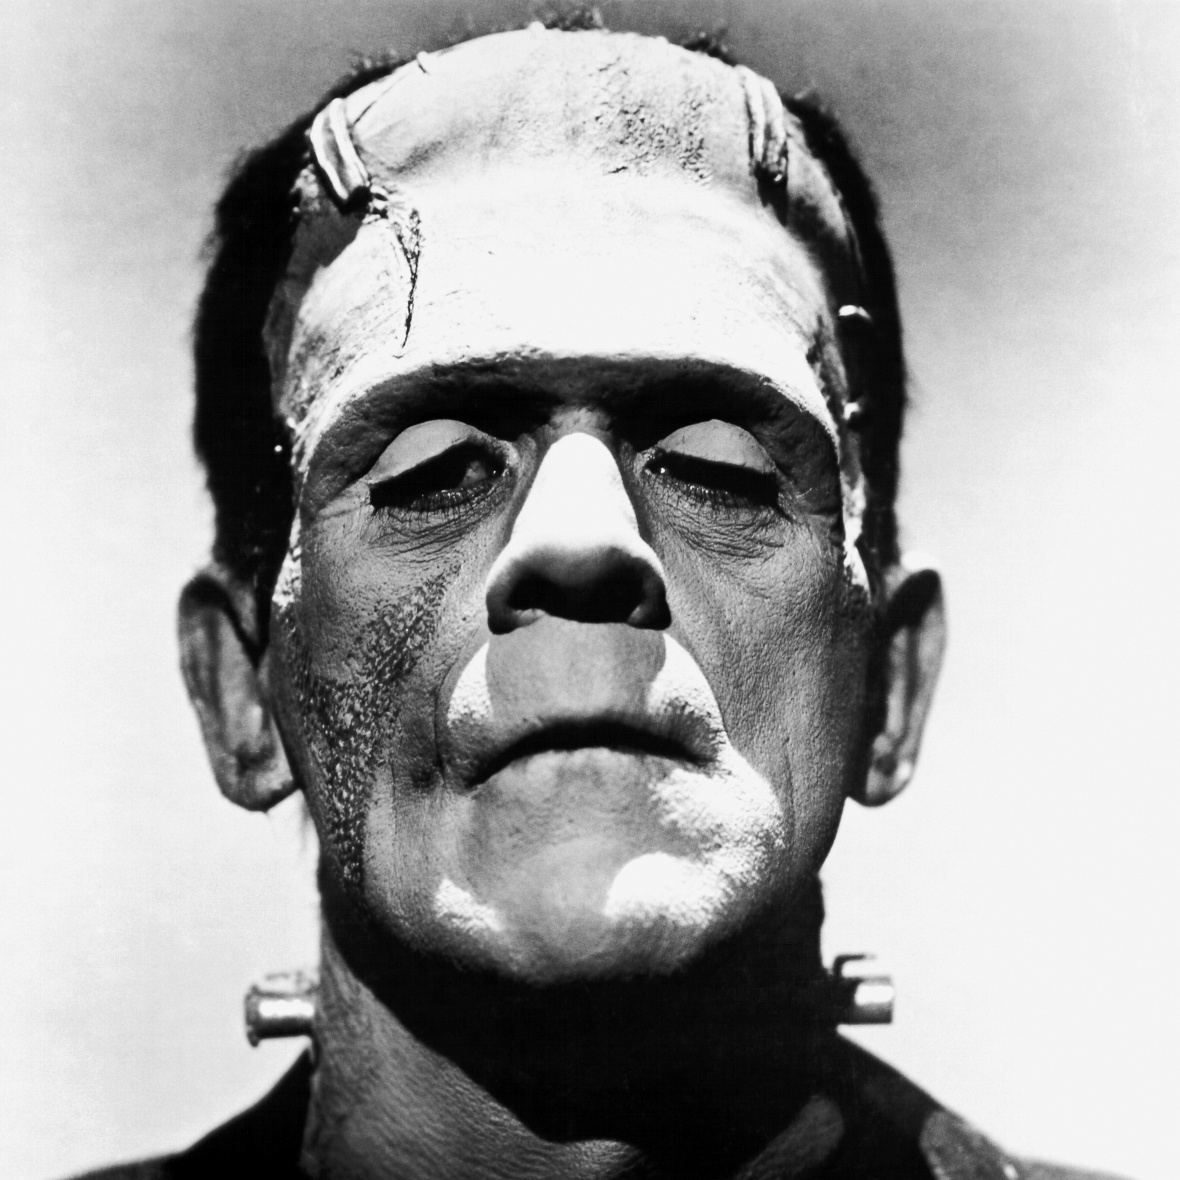 Boris_Karloff_as_Frankenstein's_monster